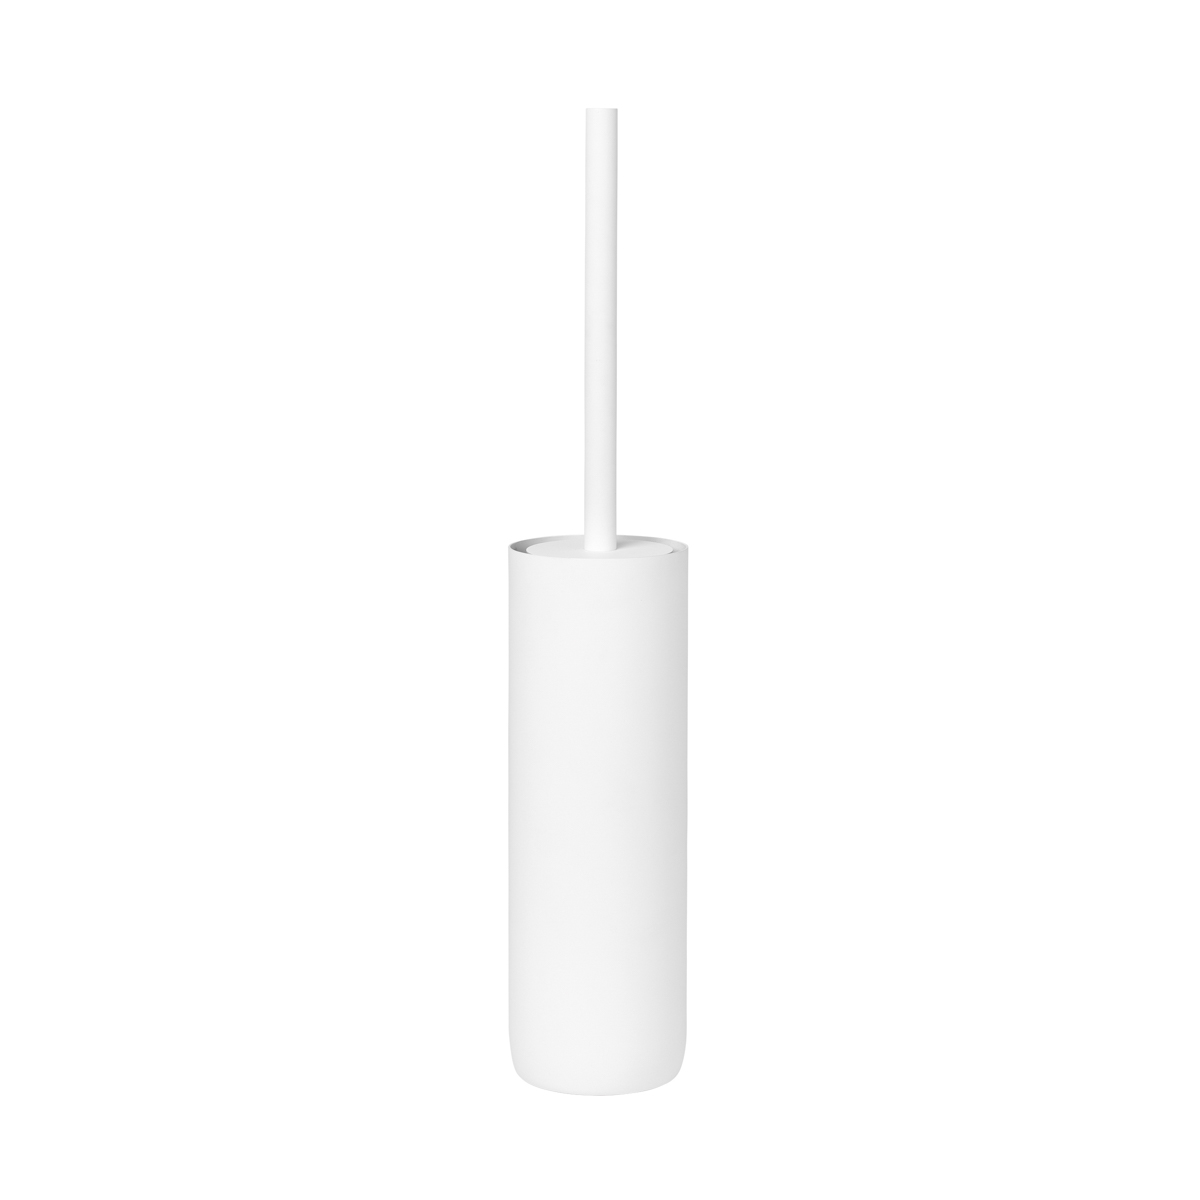 WC-Bürste -MODO- White, Ø 8,5 cm. Material: Stahl Titanbeschichtet, Gummi, Kunststoff. Von Blomus.